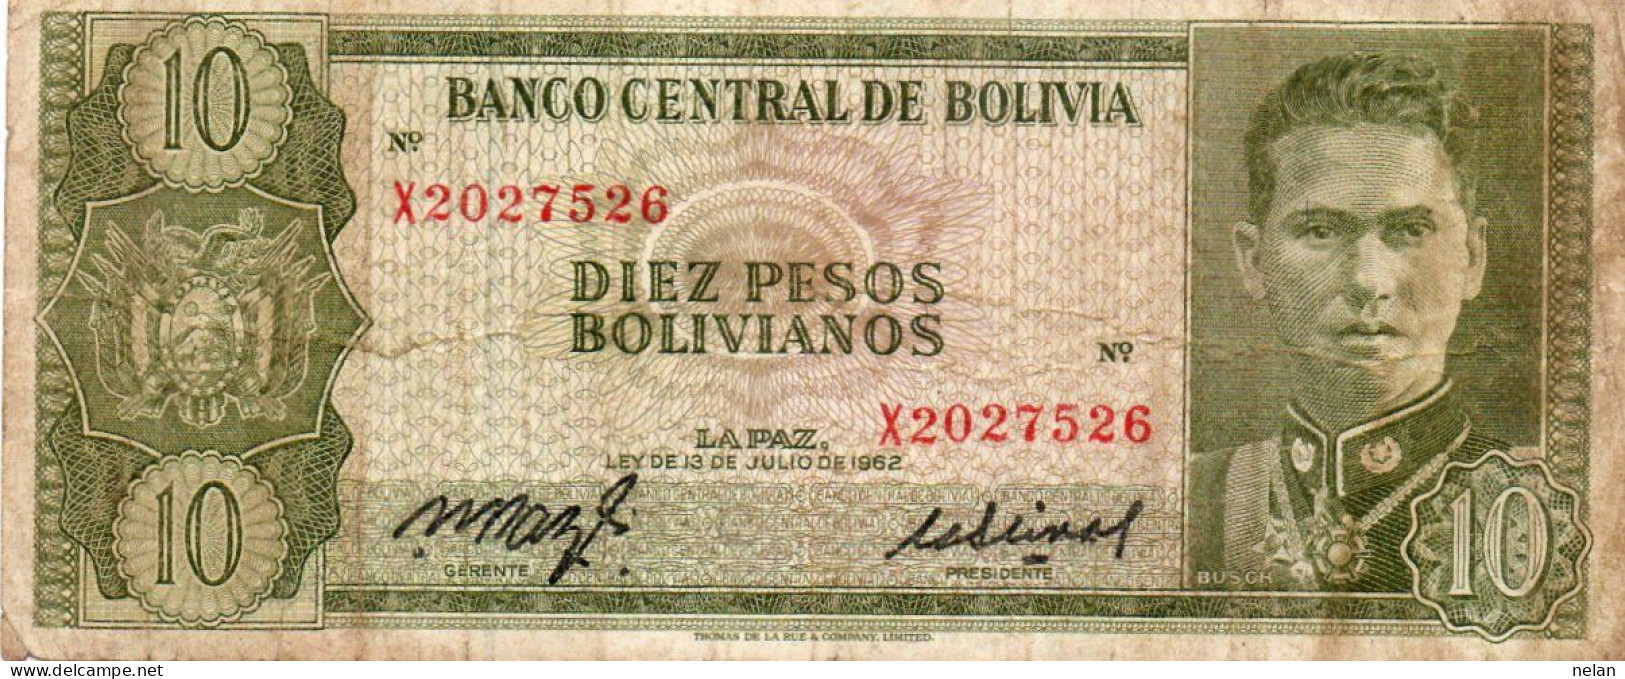 BOLIVIA 10 PESOS BOLIVIANOS 1962 - P-154a.16 CIRC. - Bolivie